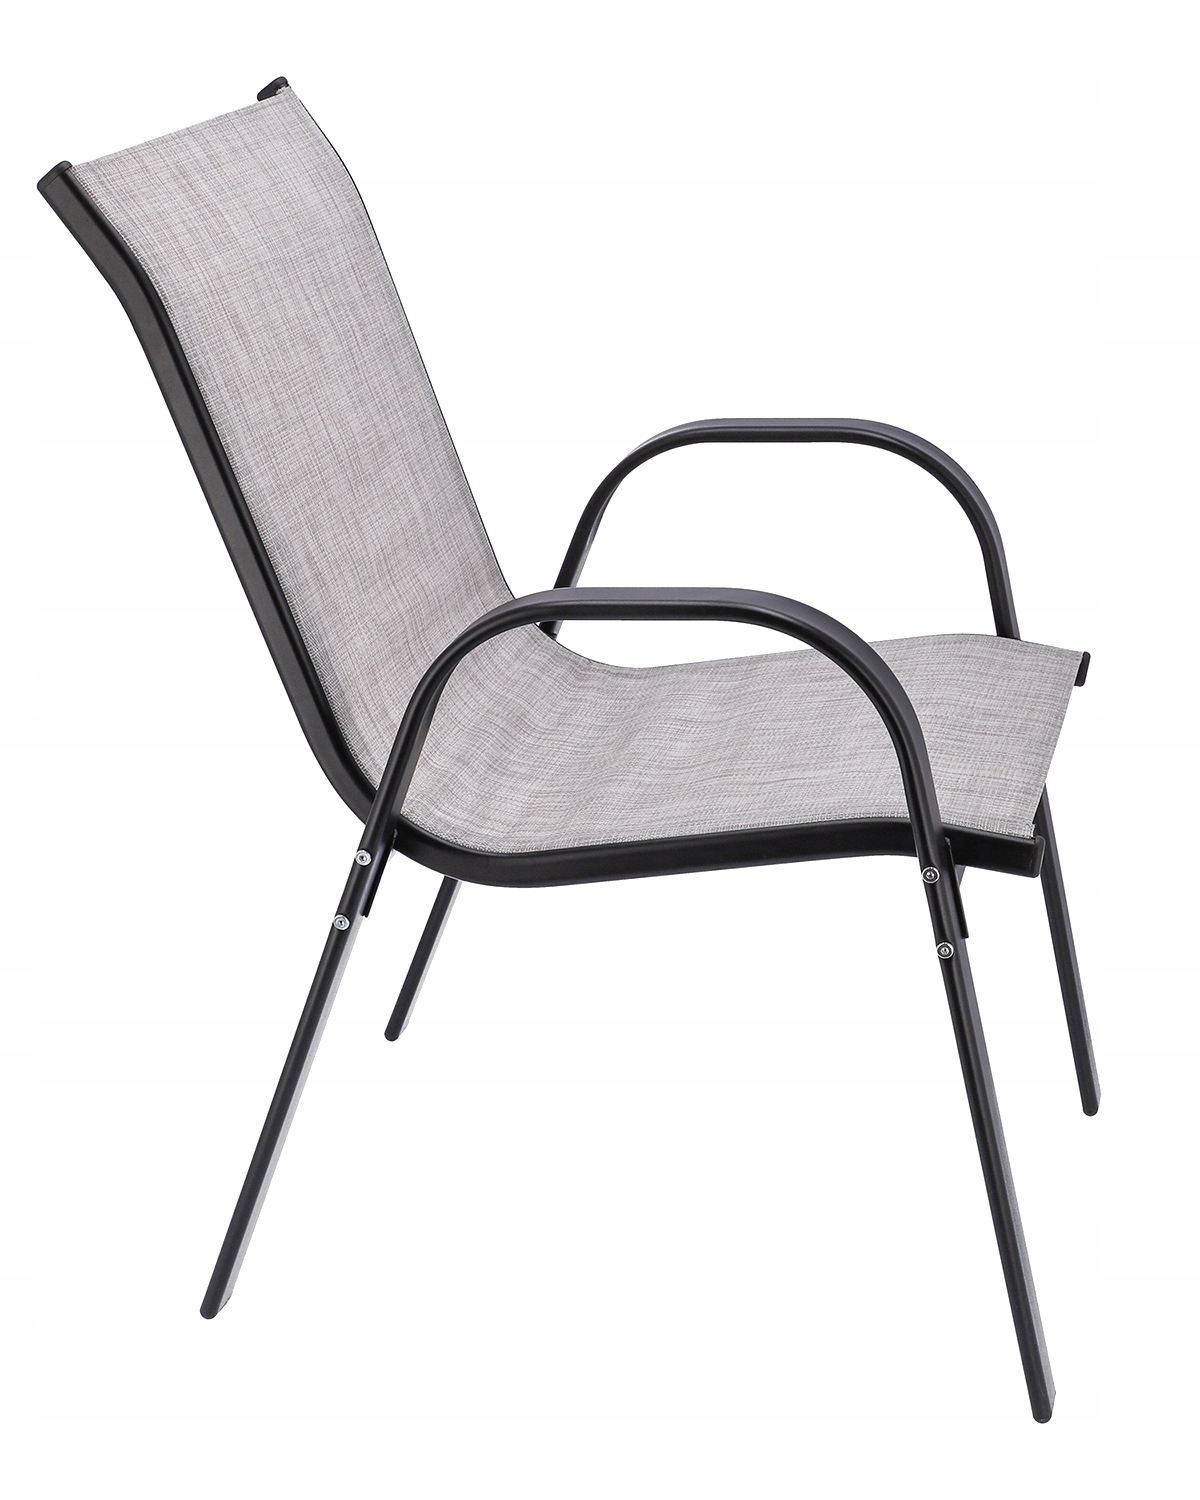 MEBLE OGRODOWE taras zestaw komplet stół krzesł, , OM-968059.5900410968059, Liczba elementów w zestawie 4